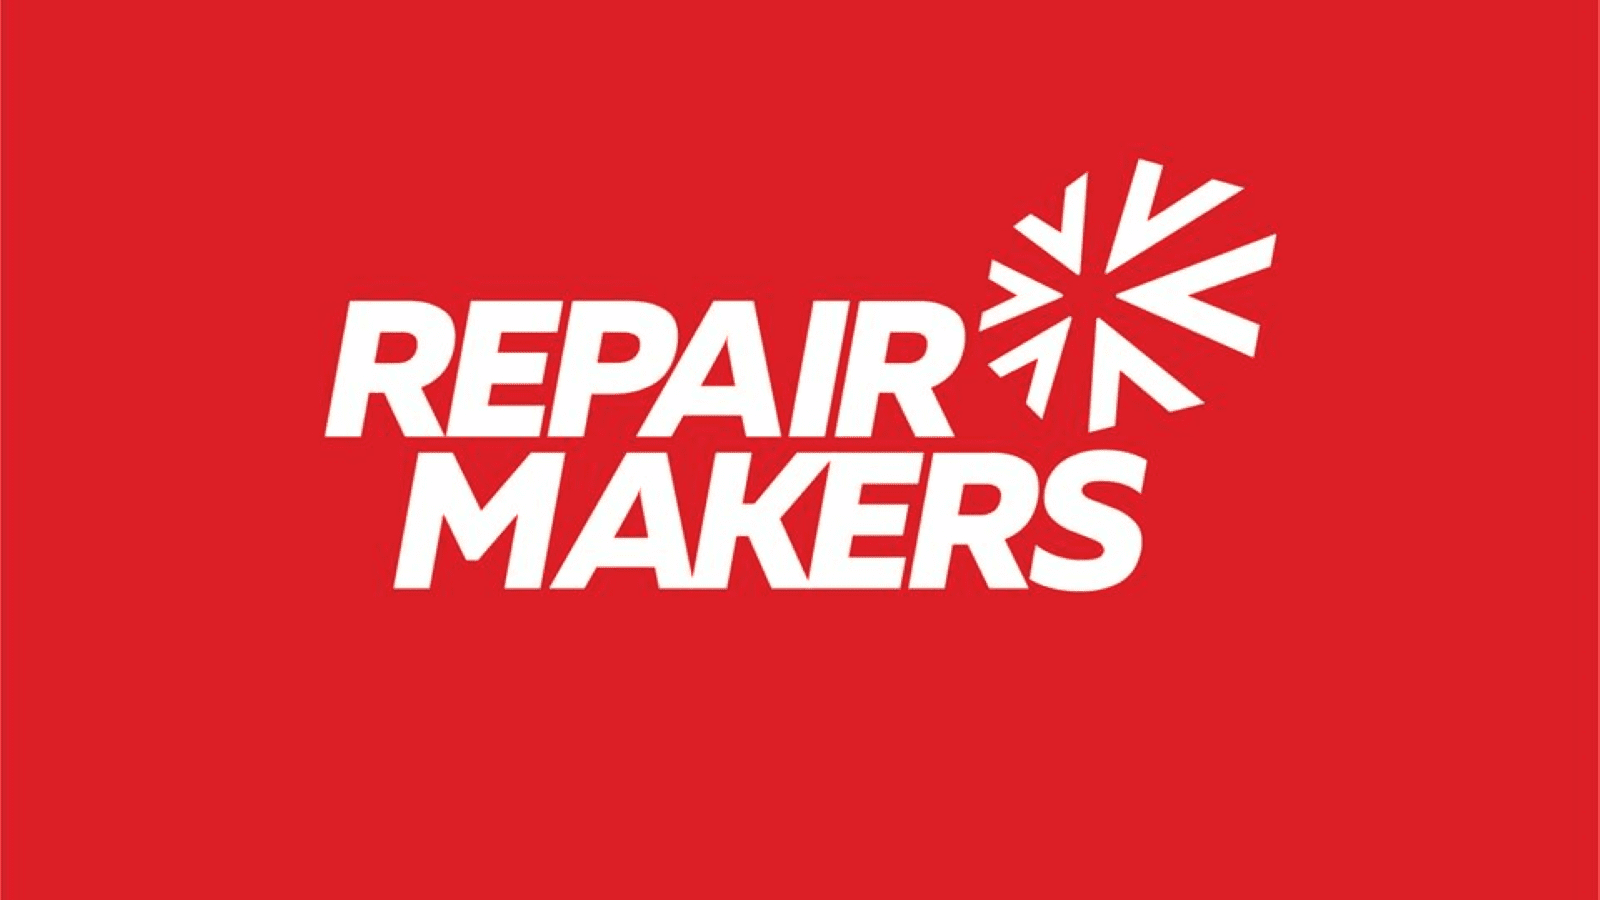 Repair makers logo